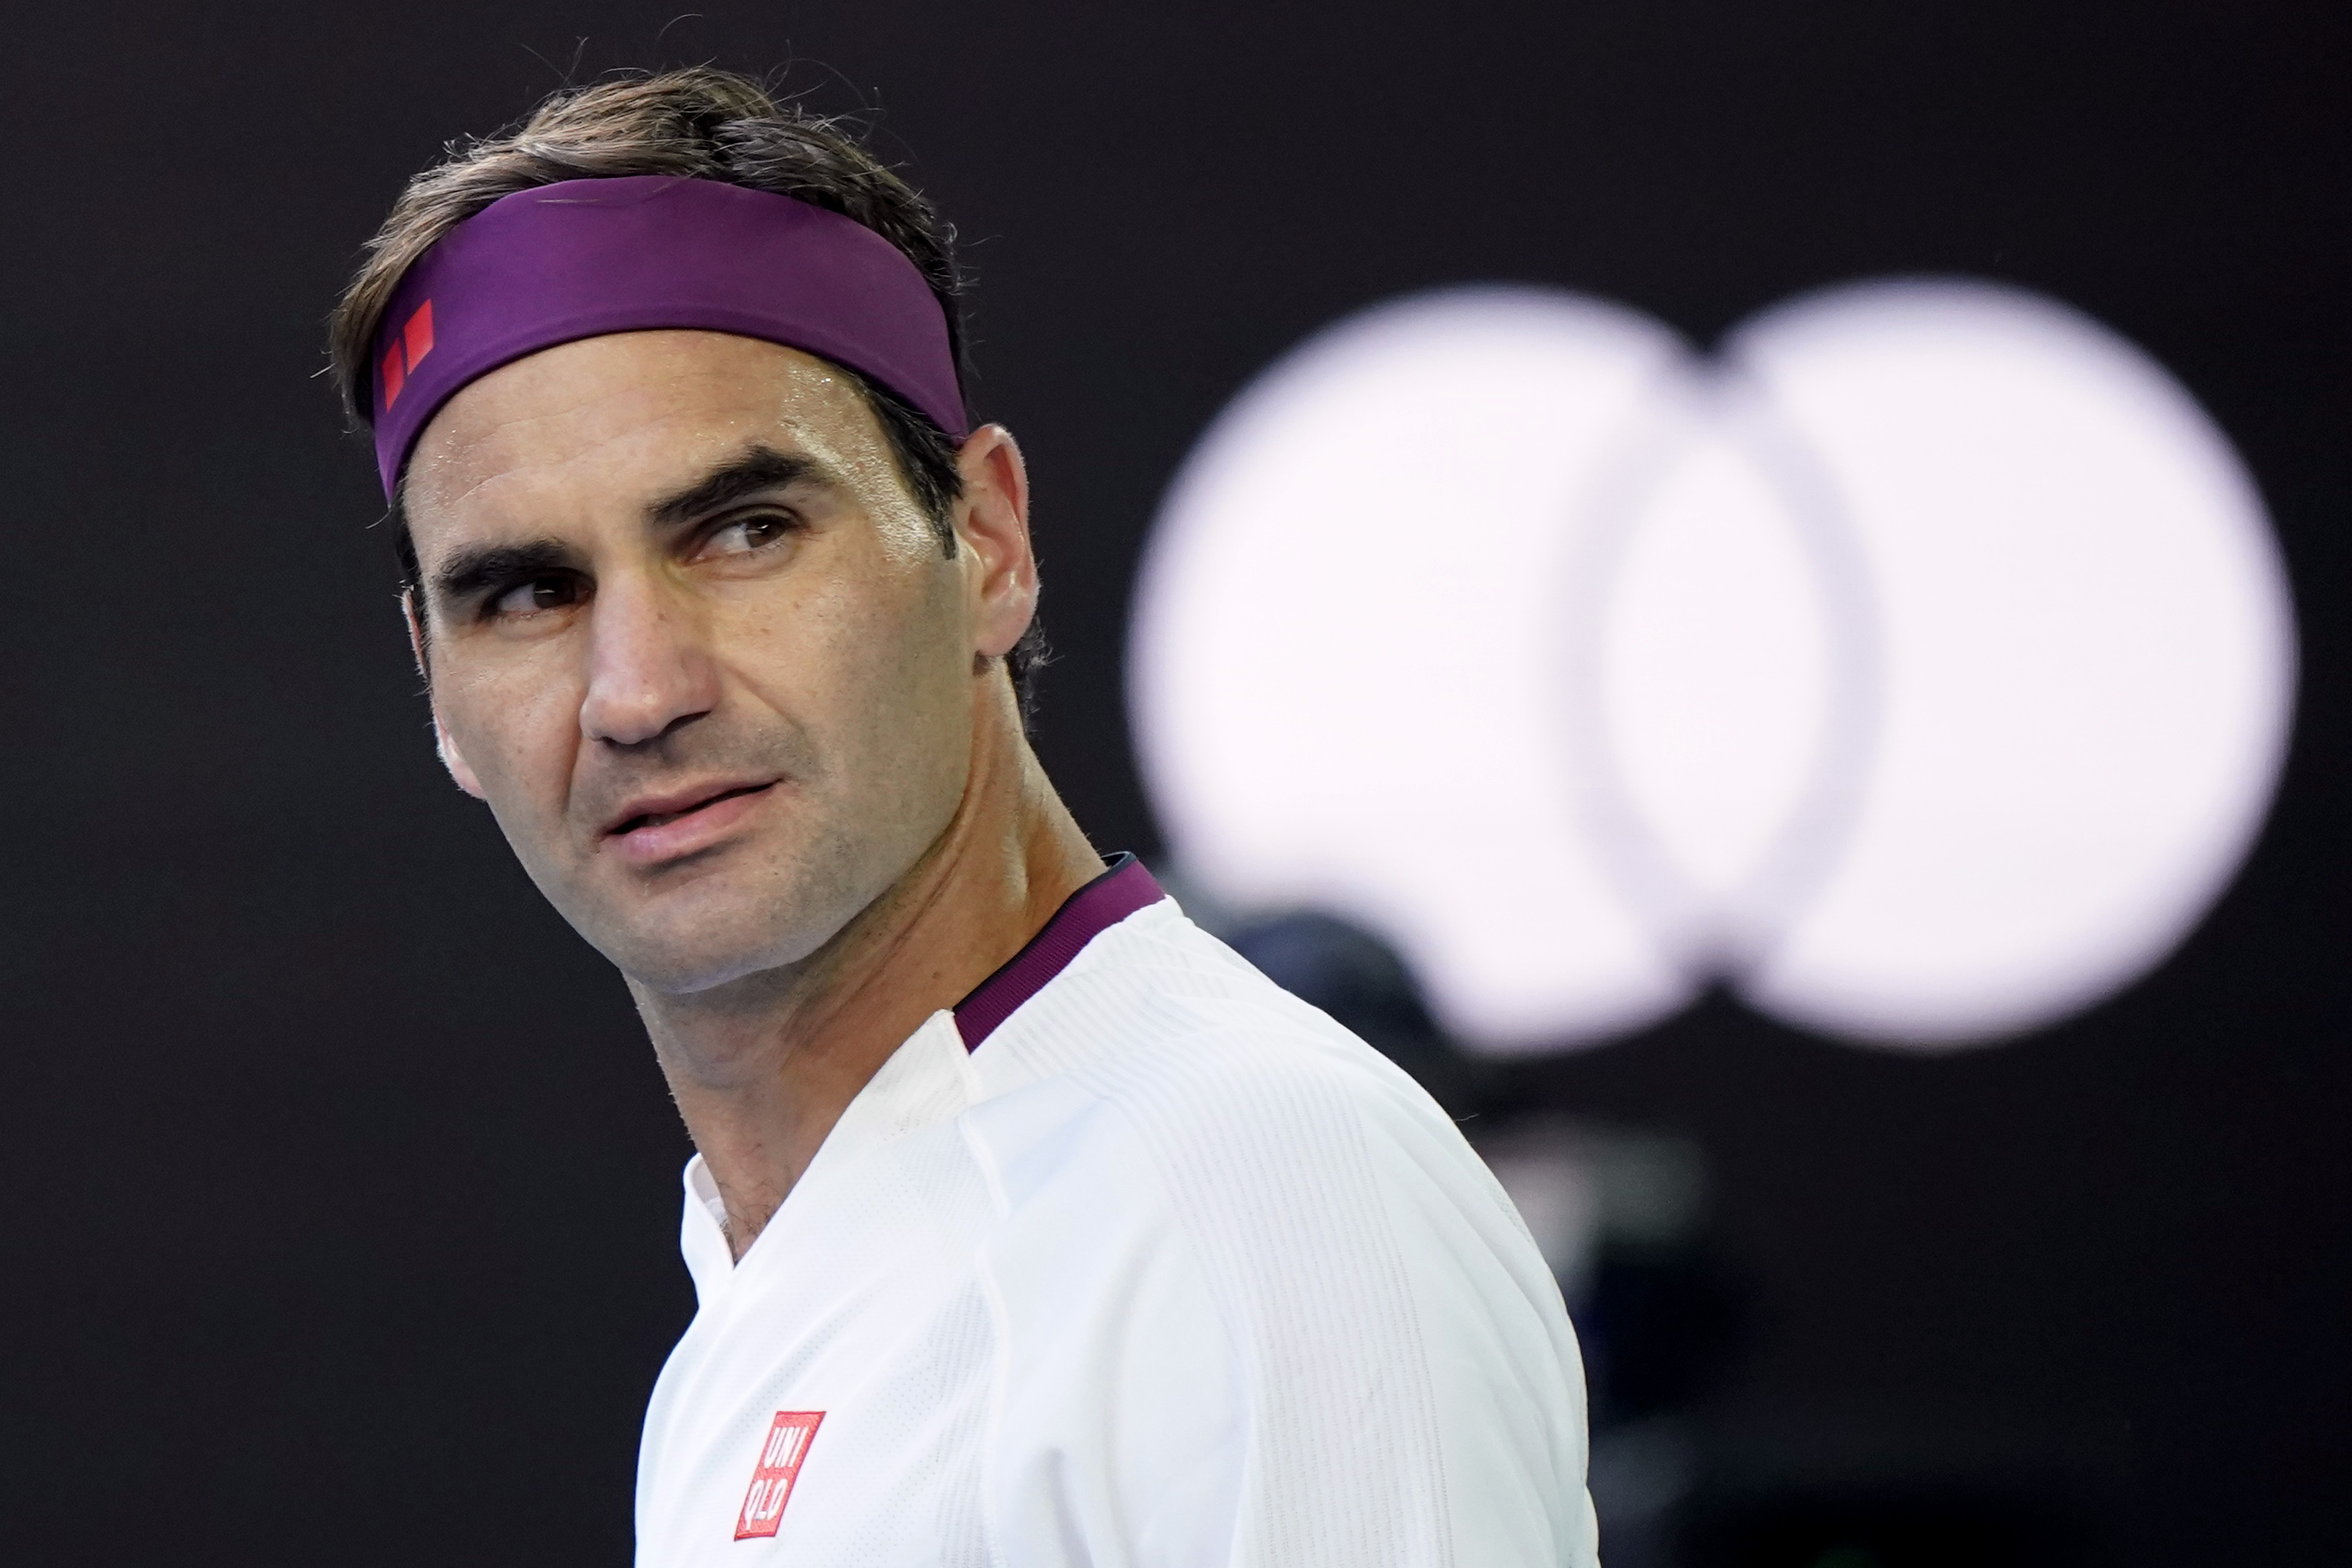 Federer fuera del circuito hasta 2021 tras cirugía de rodilla